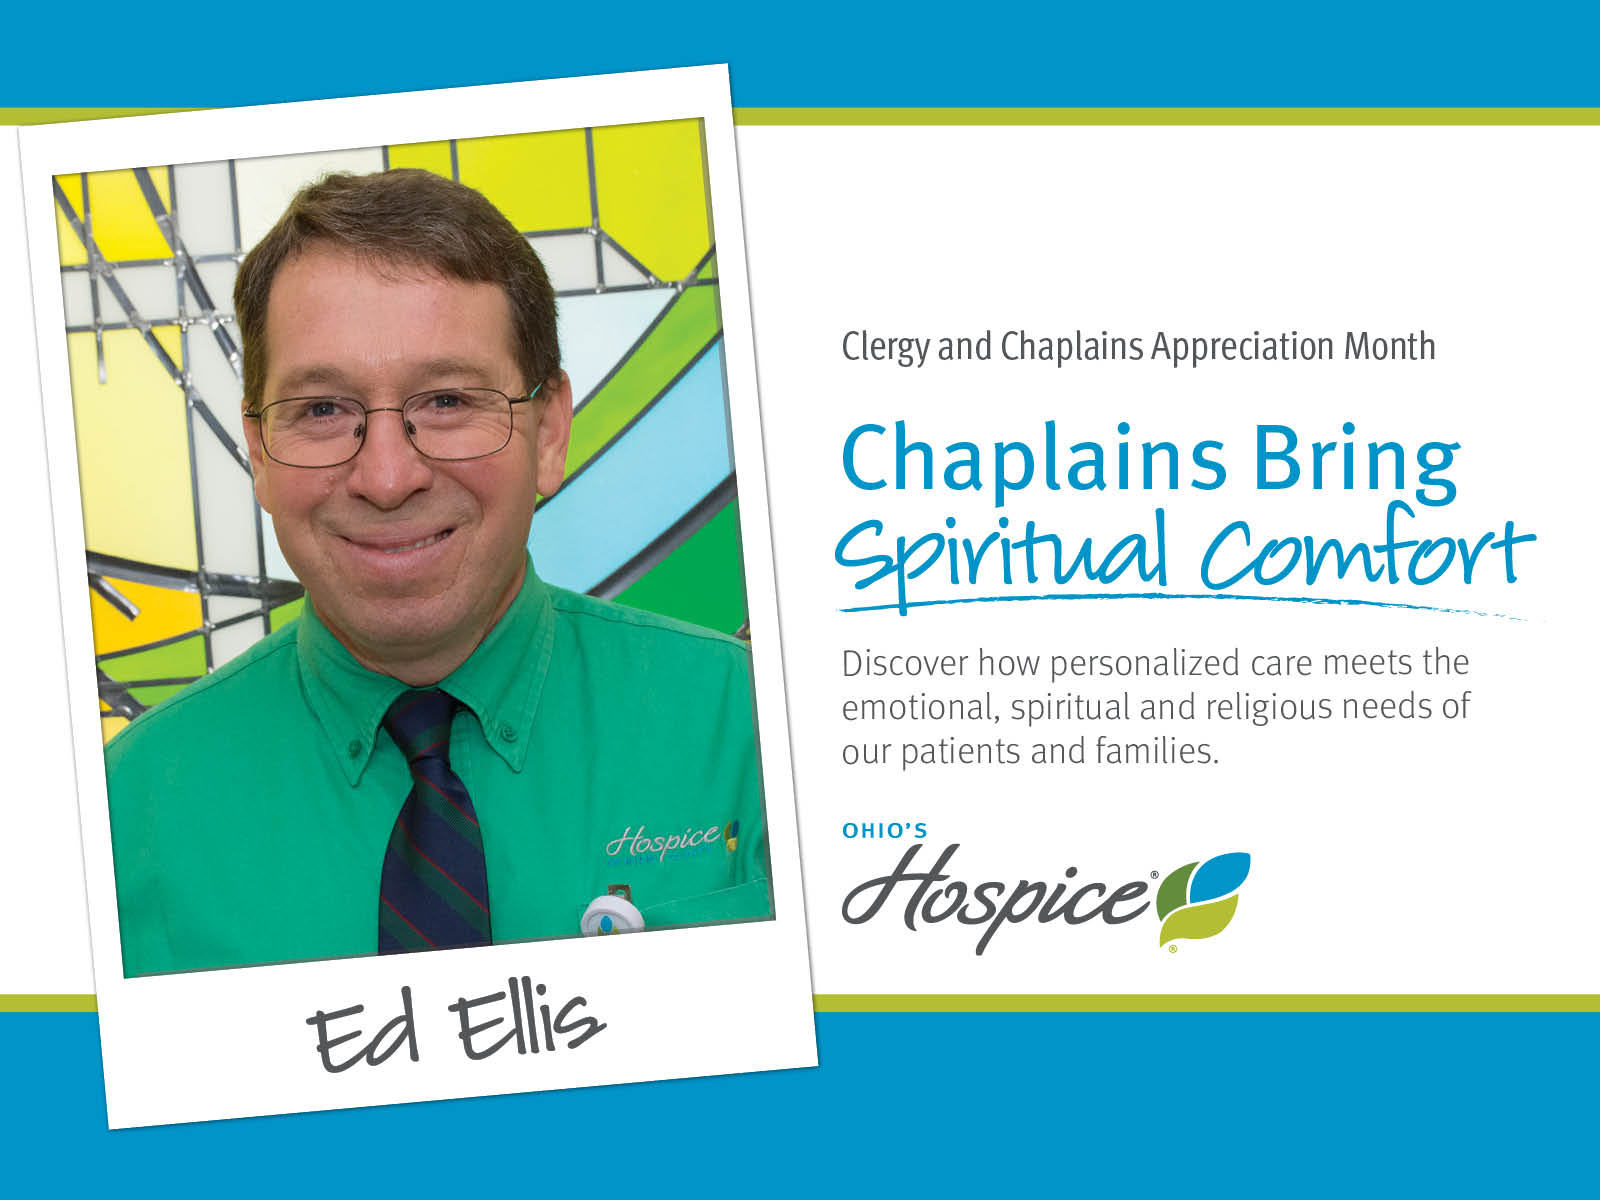 Chaplains Bring Spiritual Comfort. Ohio's Hospice